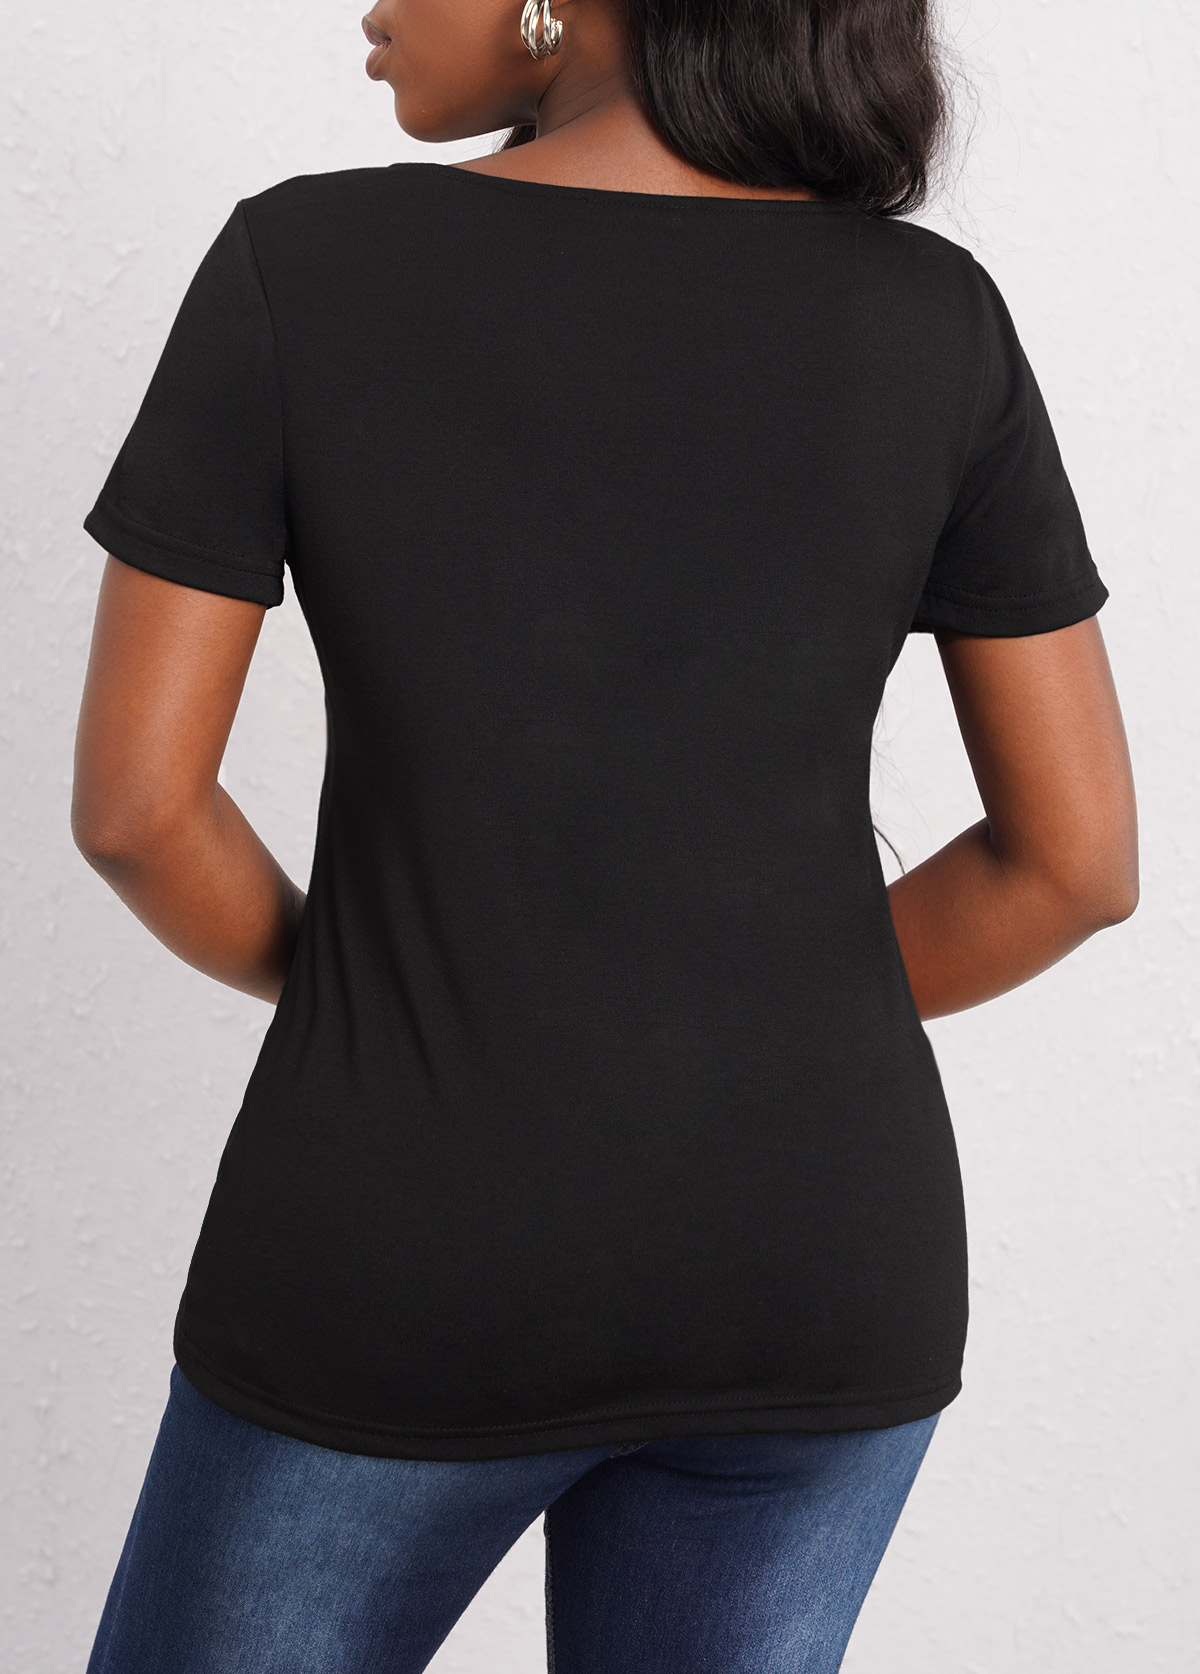 Short Sleeve Black Asymmetrical Neck T Shirt